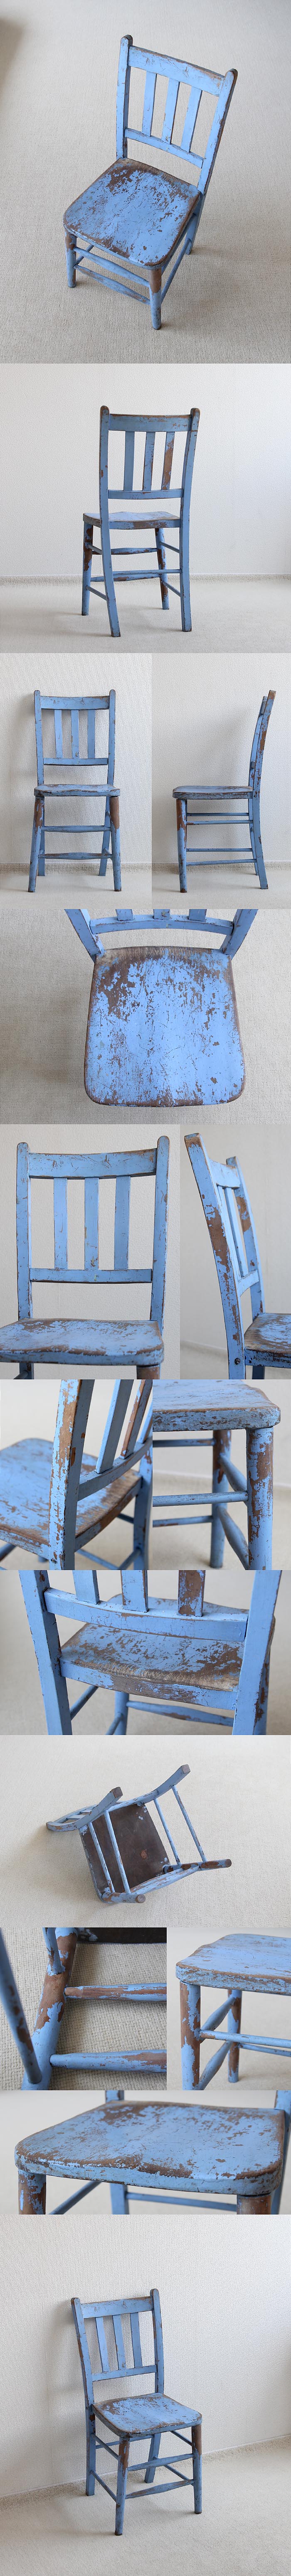 【訳あり】イギリス アンティーク ペイントチェア 木製椅子 家具 アトリエ 英国 インテリア「シャビーシック」V-629